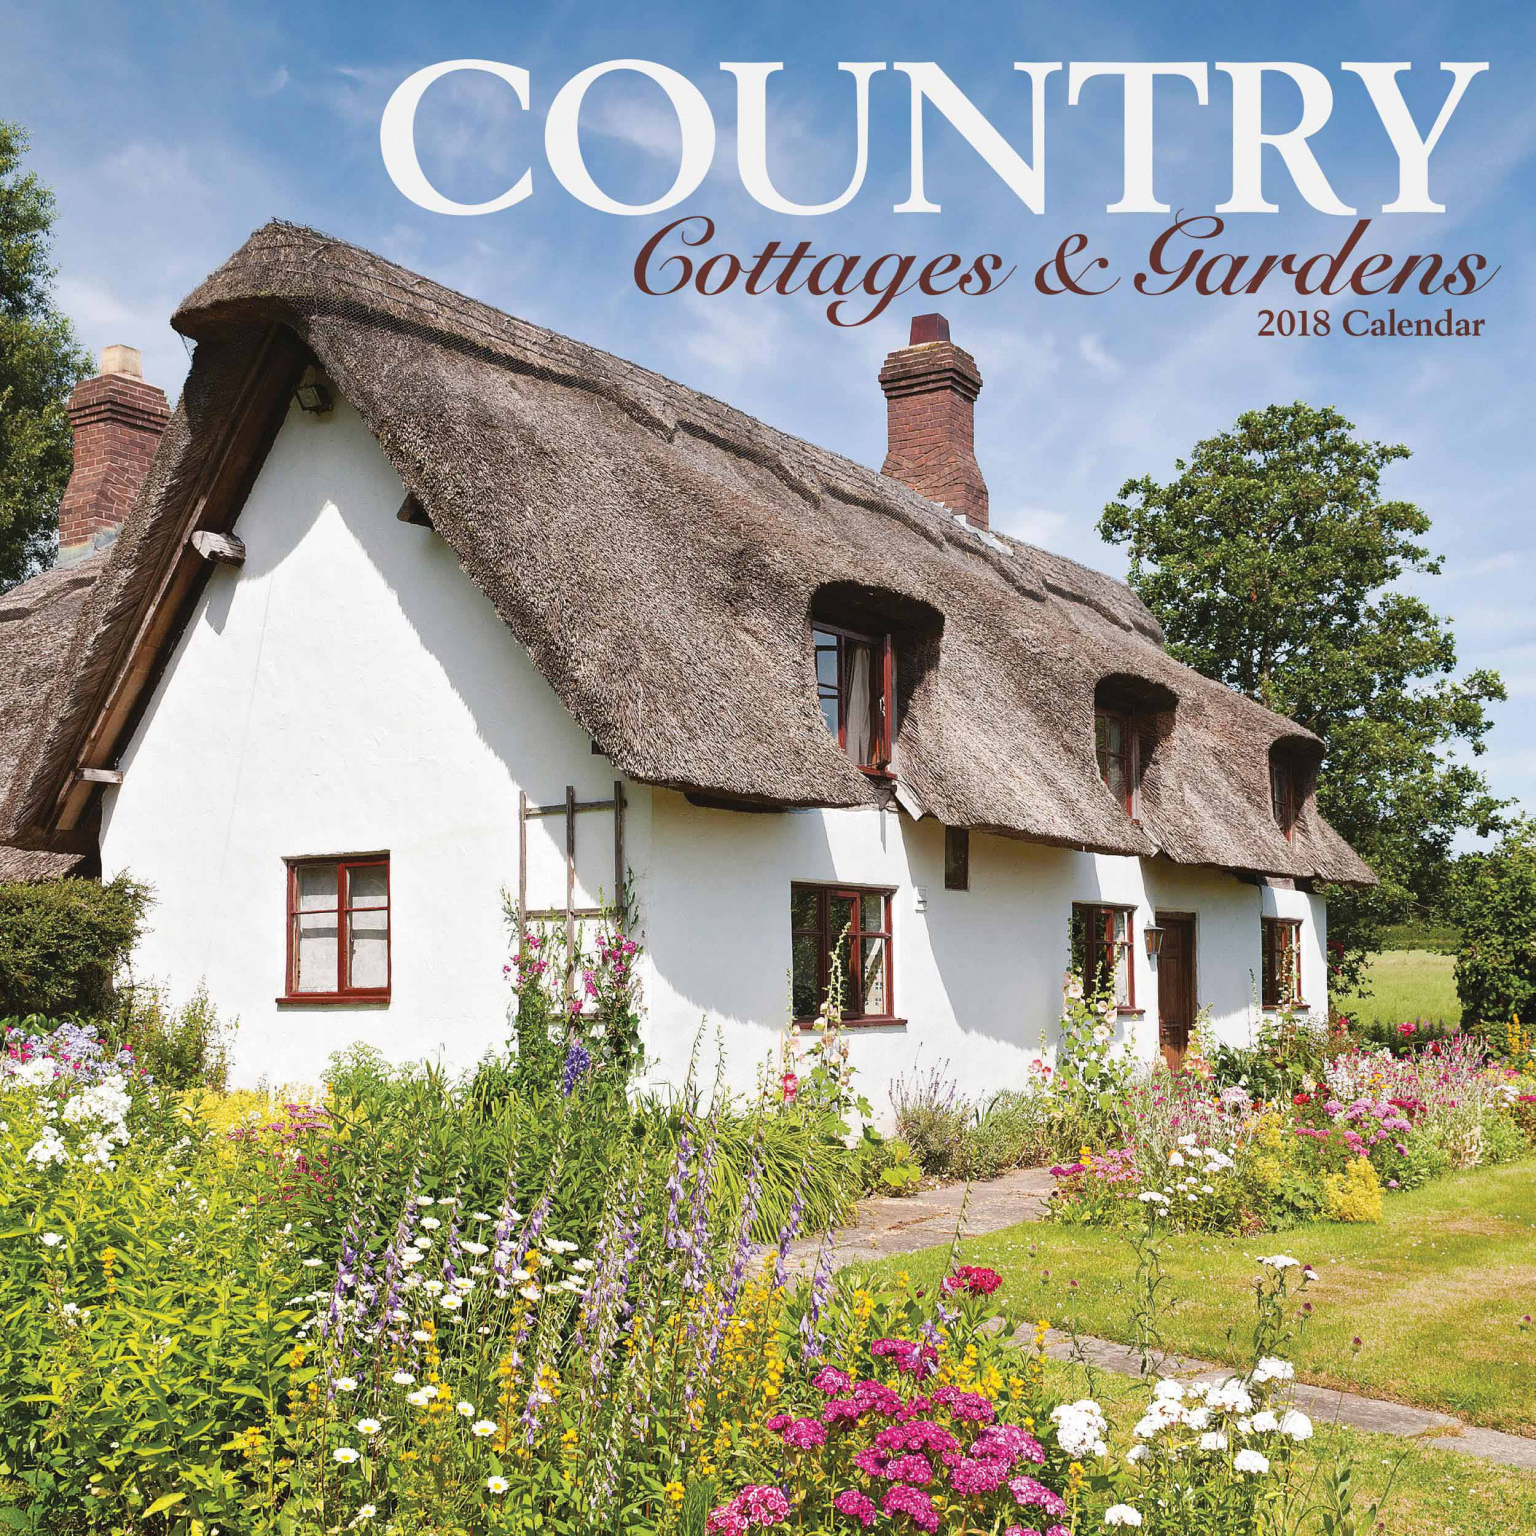 Country Cottages Gardens 2018 Calender Radway Bridge Garden Centre